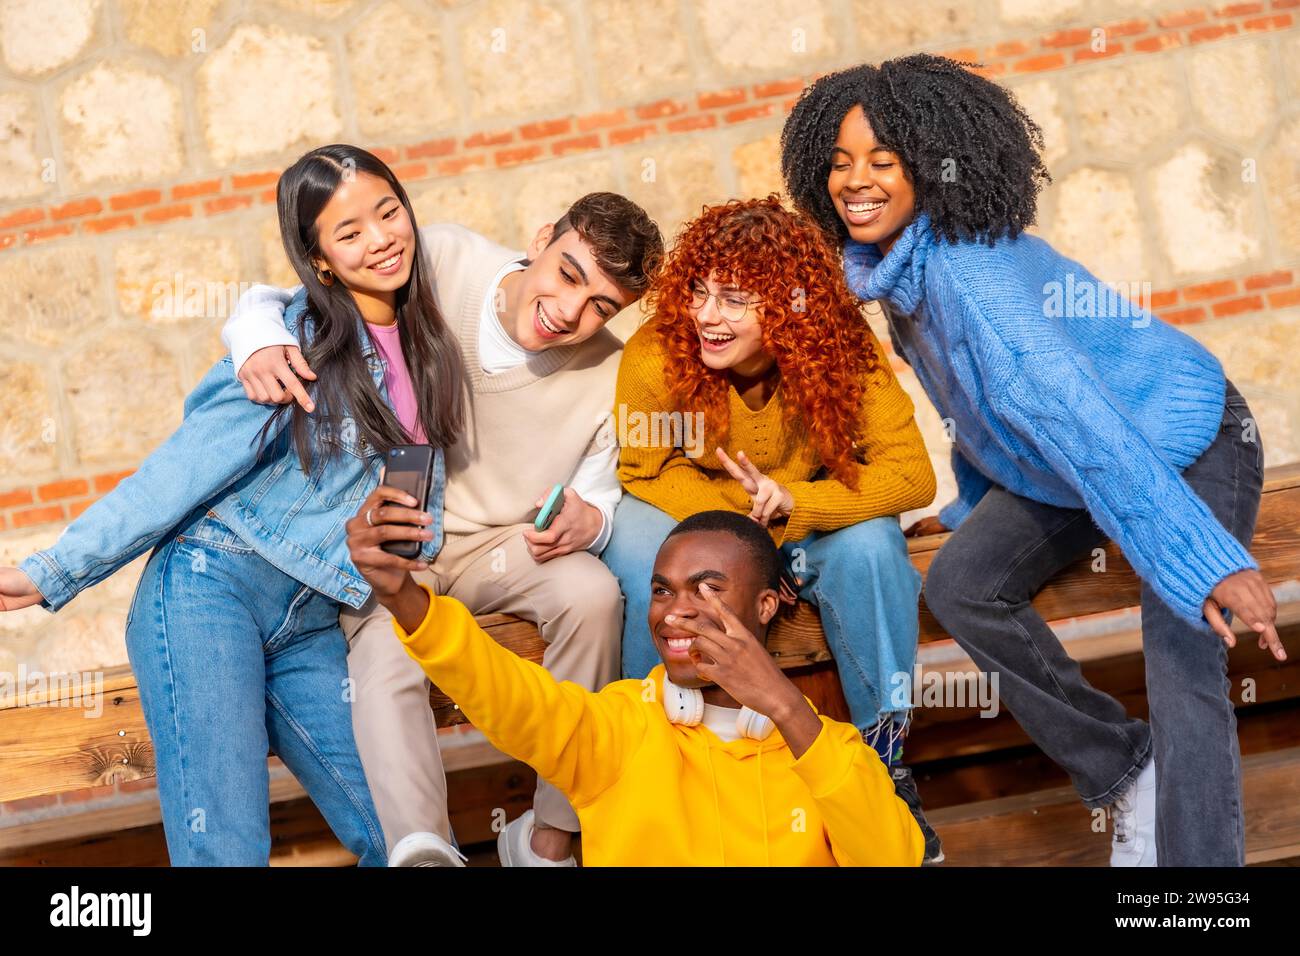 Coole Gruppe von Teenagern, die gemeinsam ein Selfie machen und draußen auf einer Holzbank sitzen Stockfoto